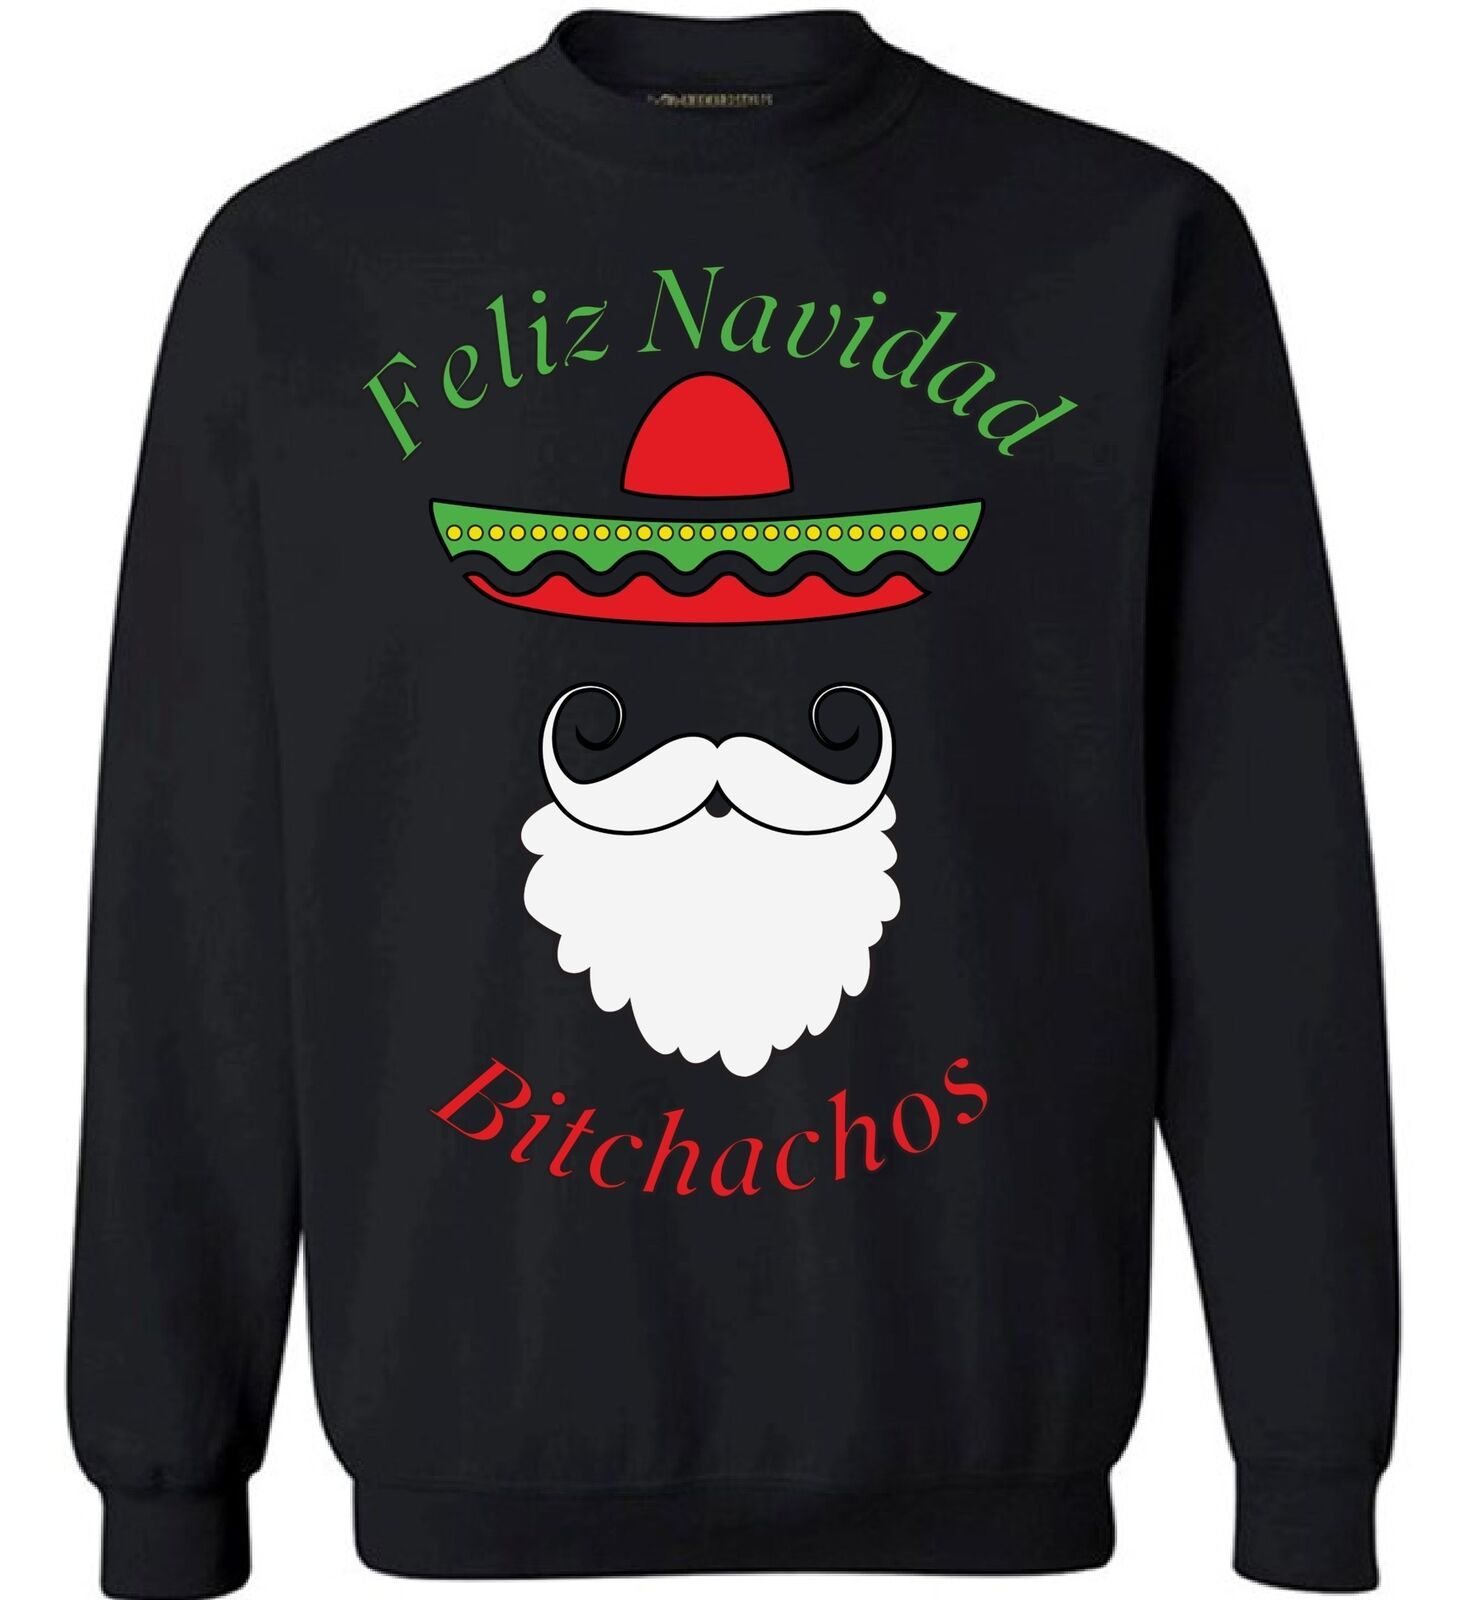 Feliz Navidad Bitchachos Santa Boat Christmas Sweatshirt Style: Sweatshirt, Color: Black